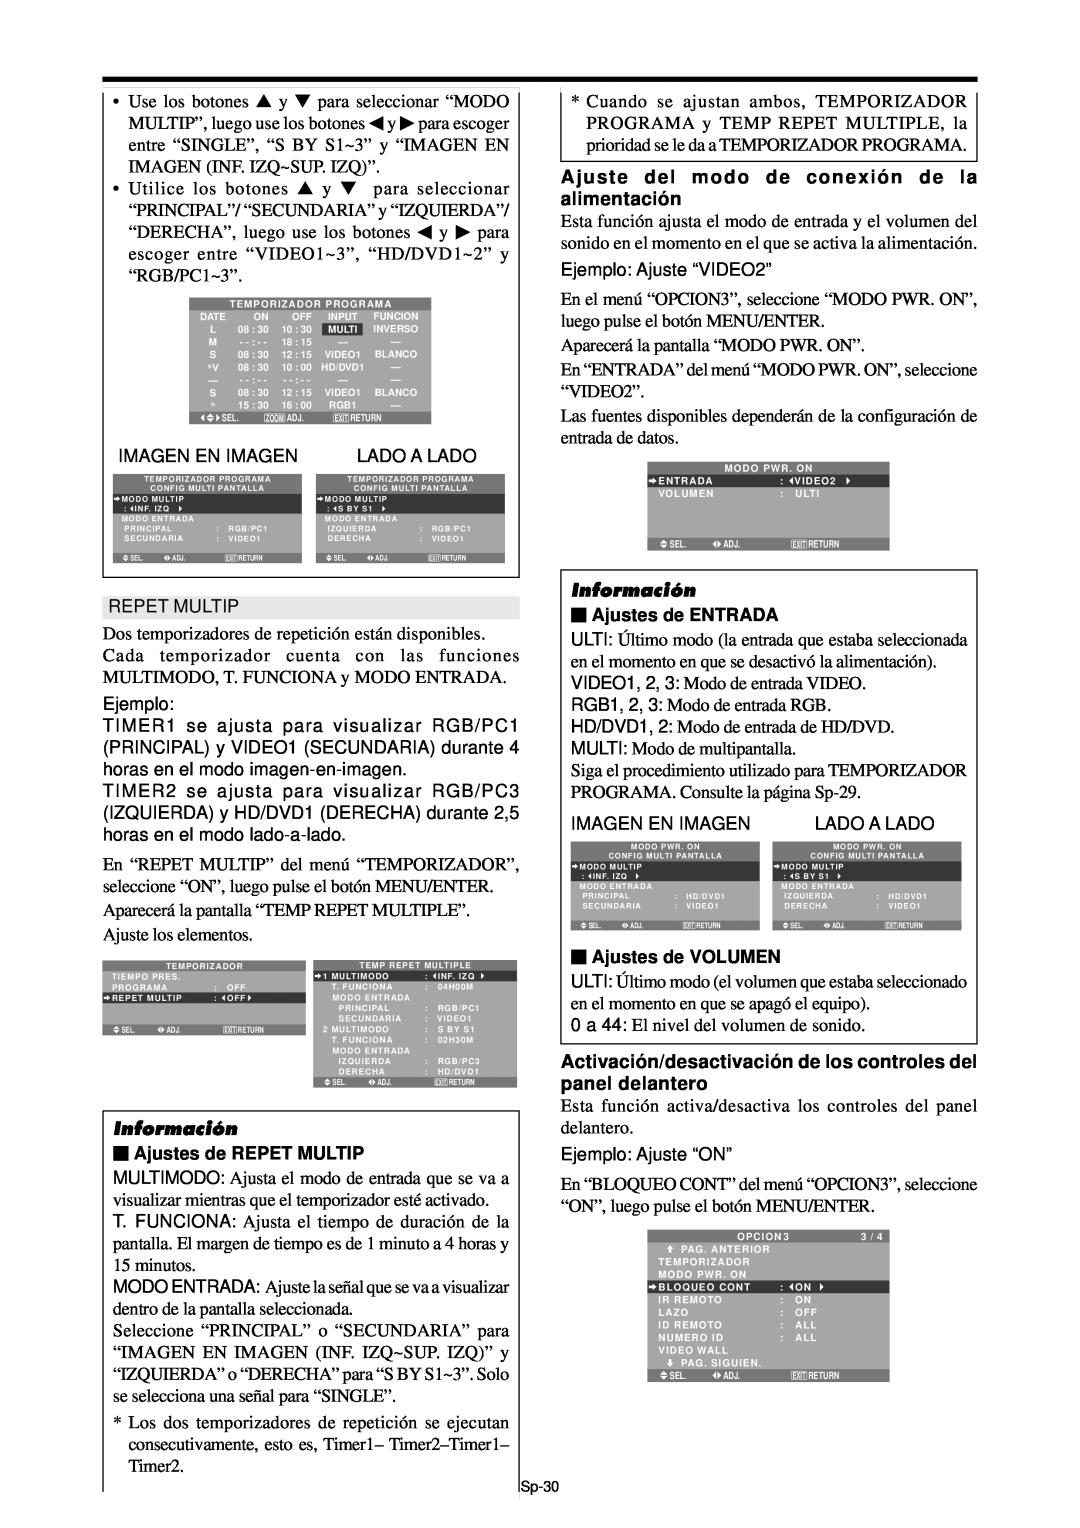 NEC PX-61XM4A, PX-42XM4A manual Ajuste del modo de conexió n de la alimentació n, Imagen En Imagen, Lado A Lado, Información 